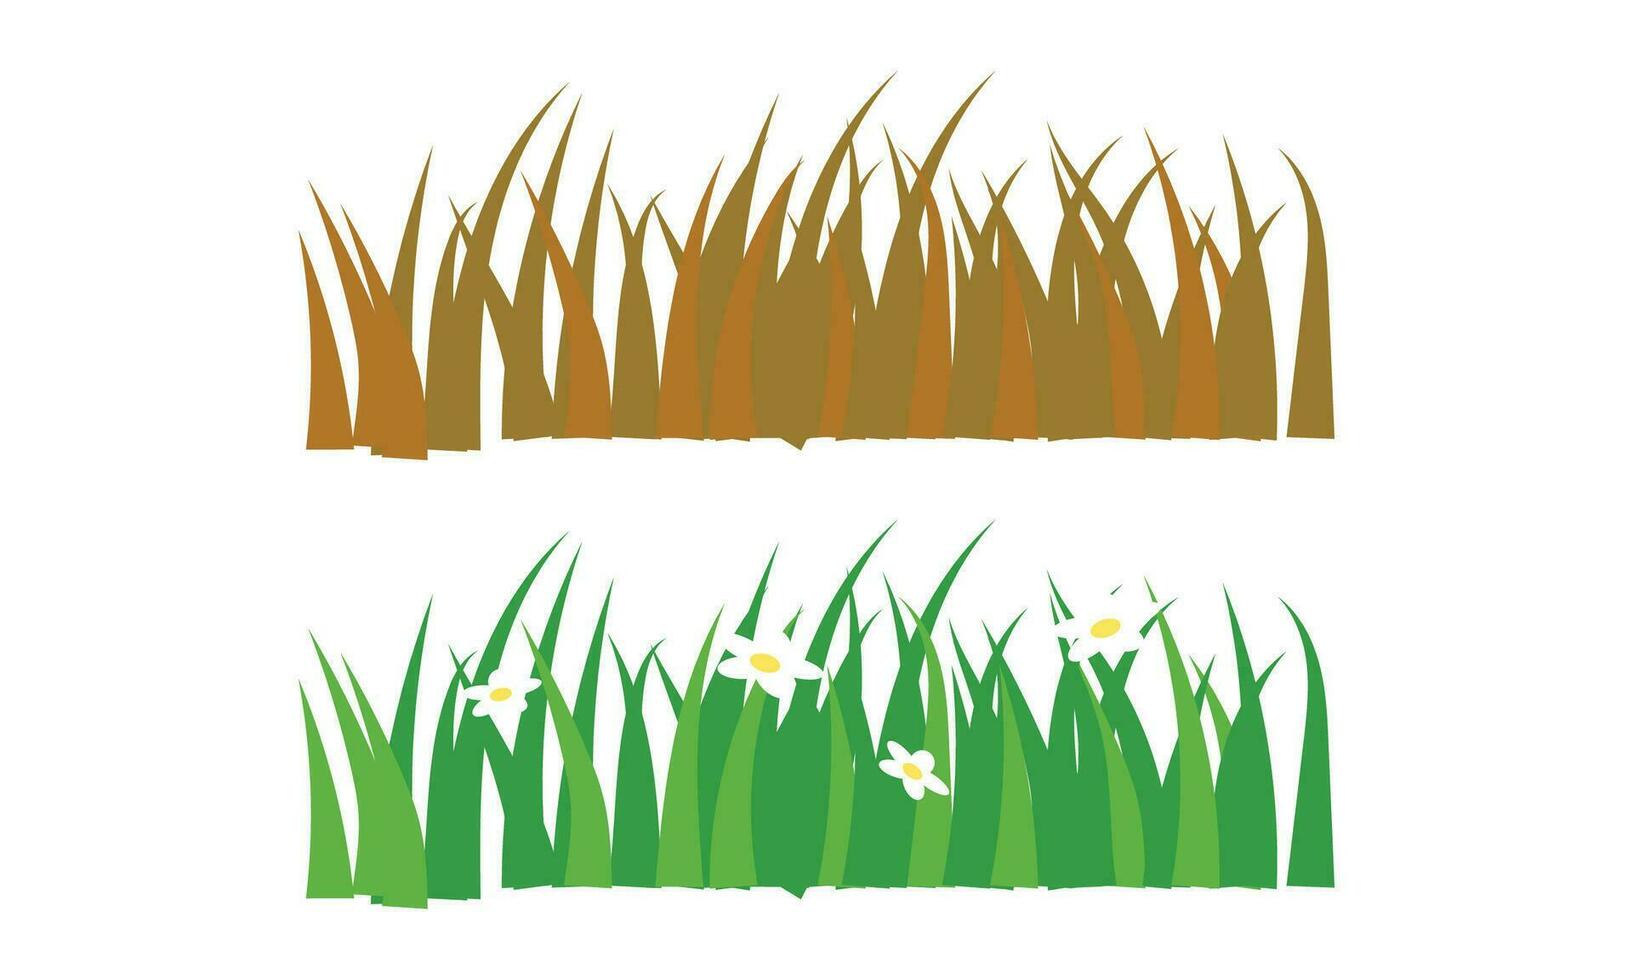 Vektor Karikatur Grün Wiese Gras mit Blume, Kräuter und Spitze Ohren. Frühling Garten Rasen horizontal Grenzen